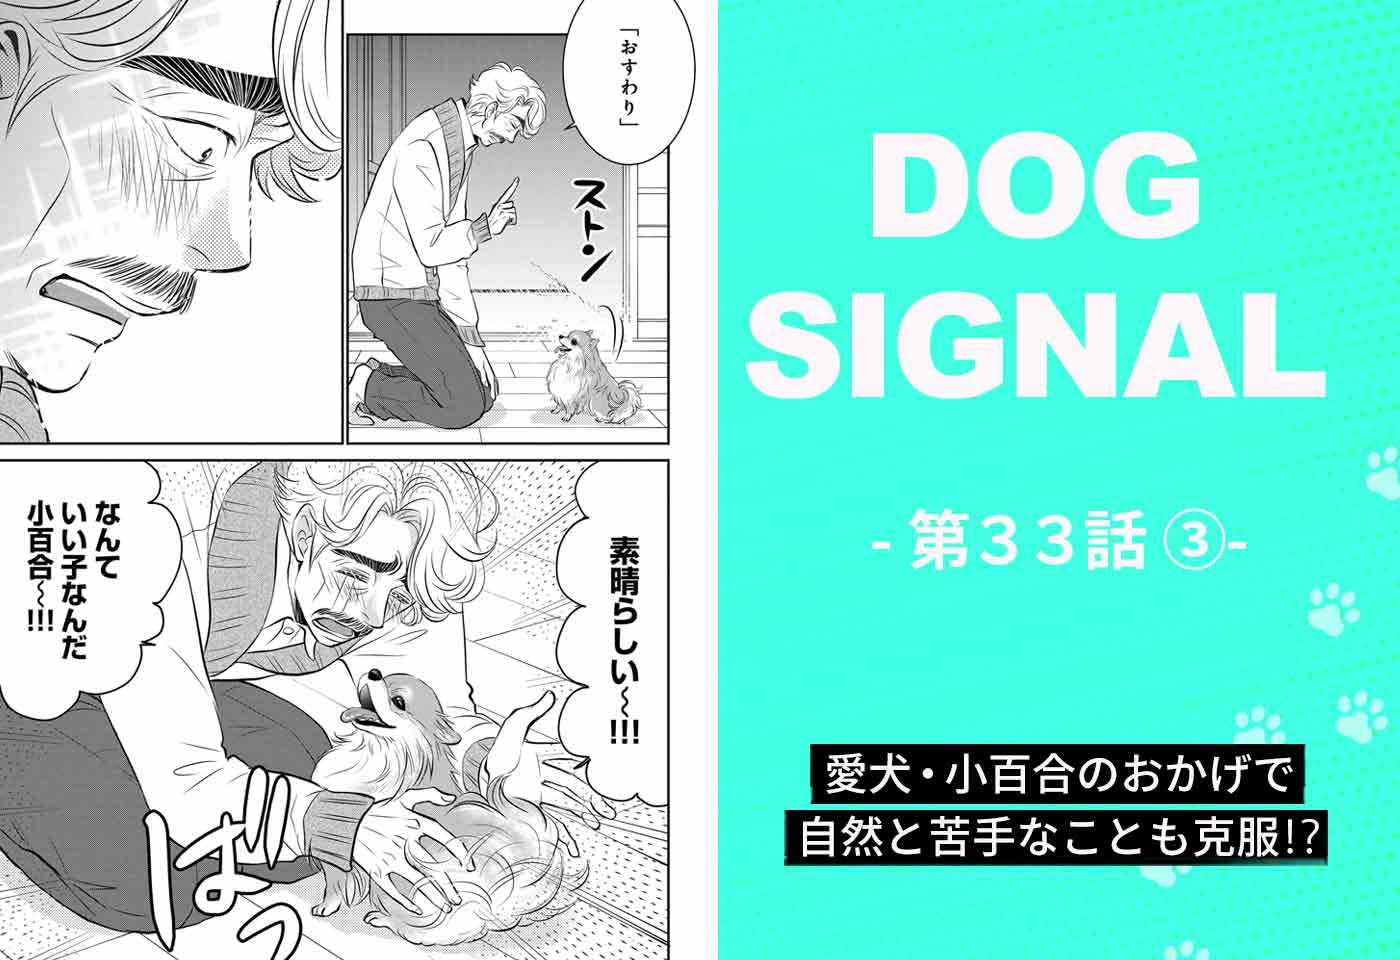 『DOG SIGNAL』33話目3/4　愛犬と飼い主に合ったしつけ（コミック7巻収録分）